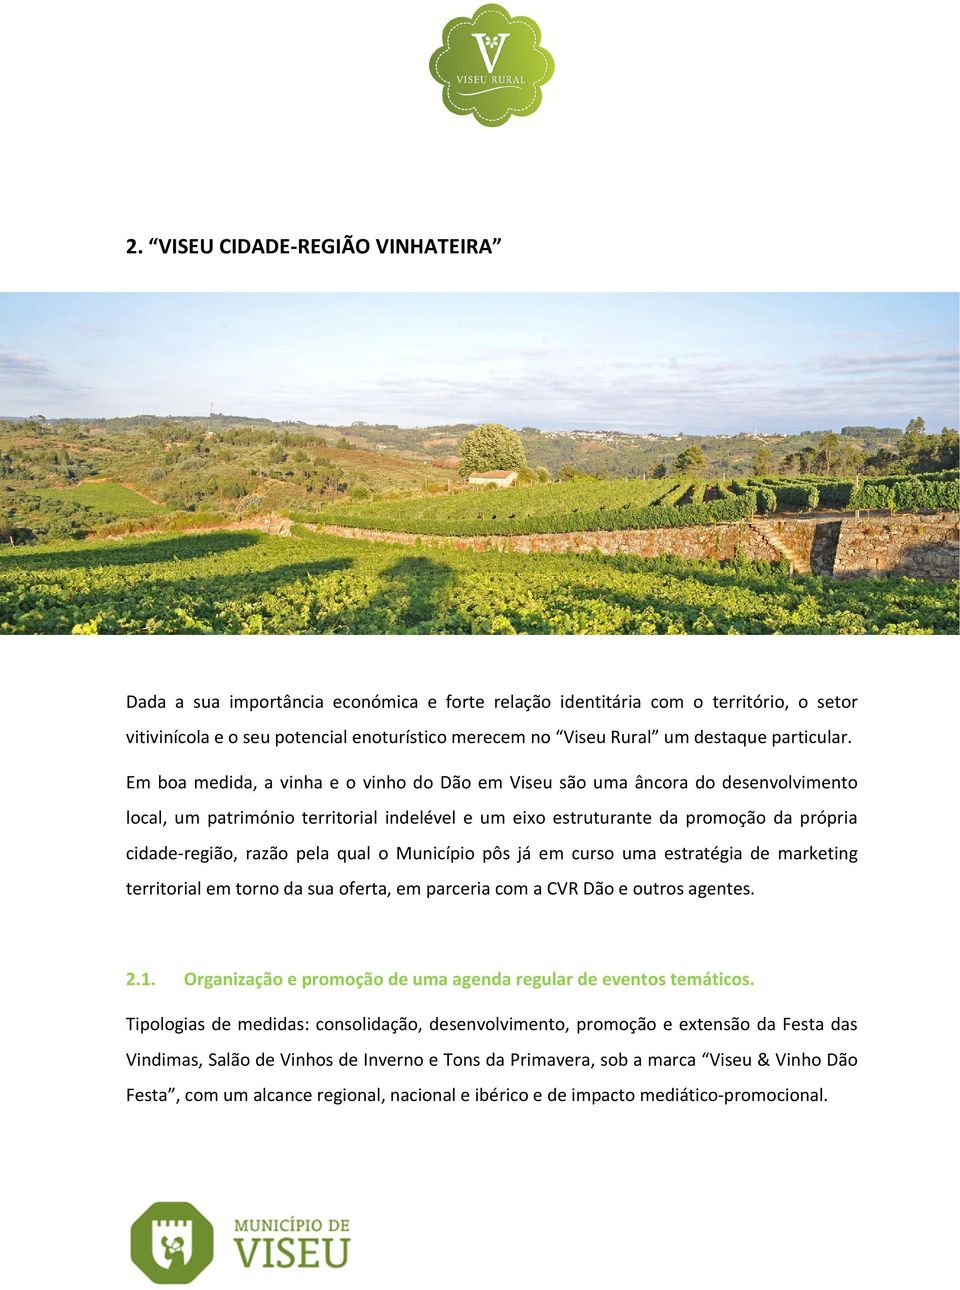 Em boa medida, a vinha e o vinho do Dão em Viseu são uma âncora do desenvolvimento local, um património territorial indelével e um eixo estruturante da promoção da própria cidade-região, razão pela